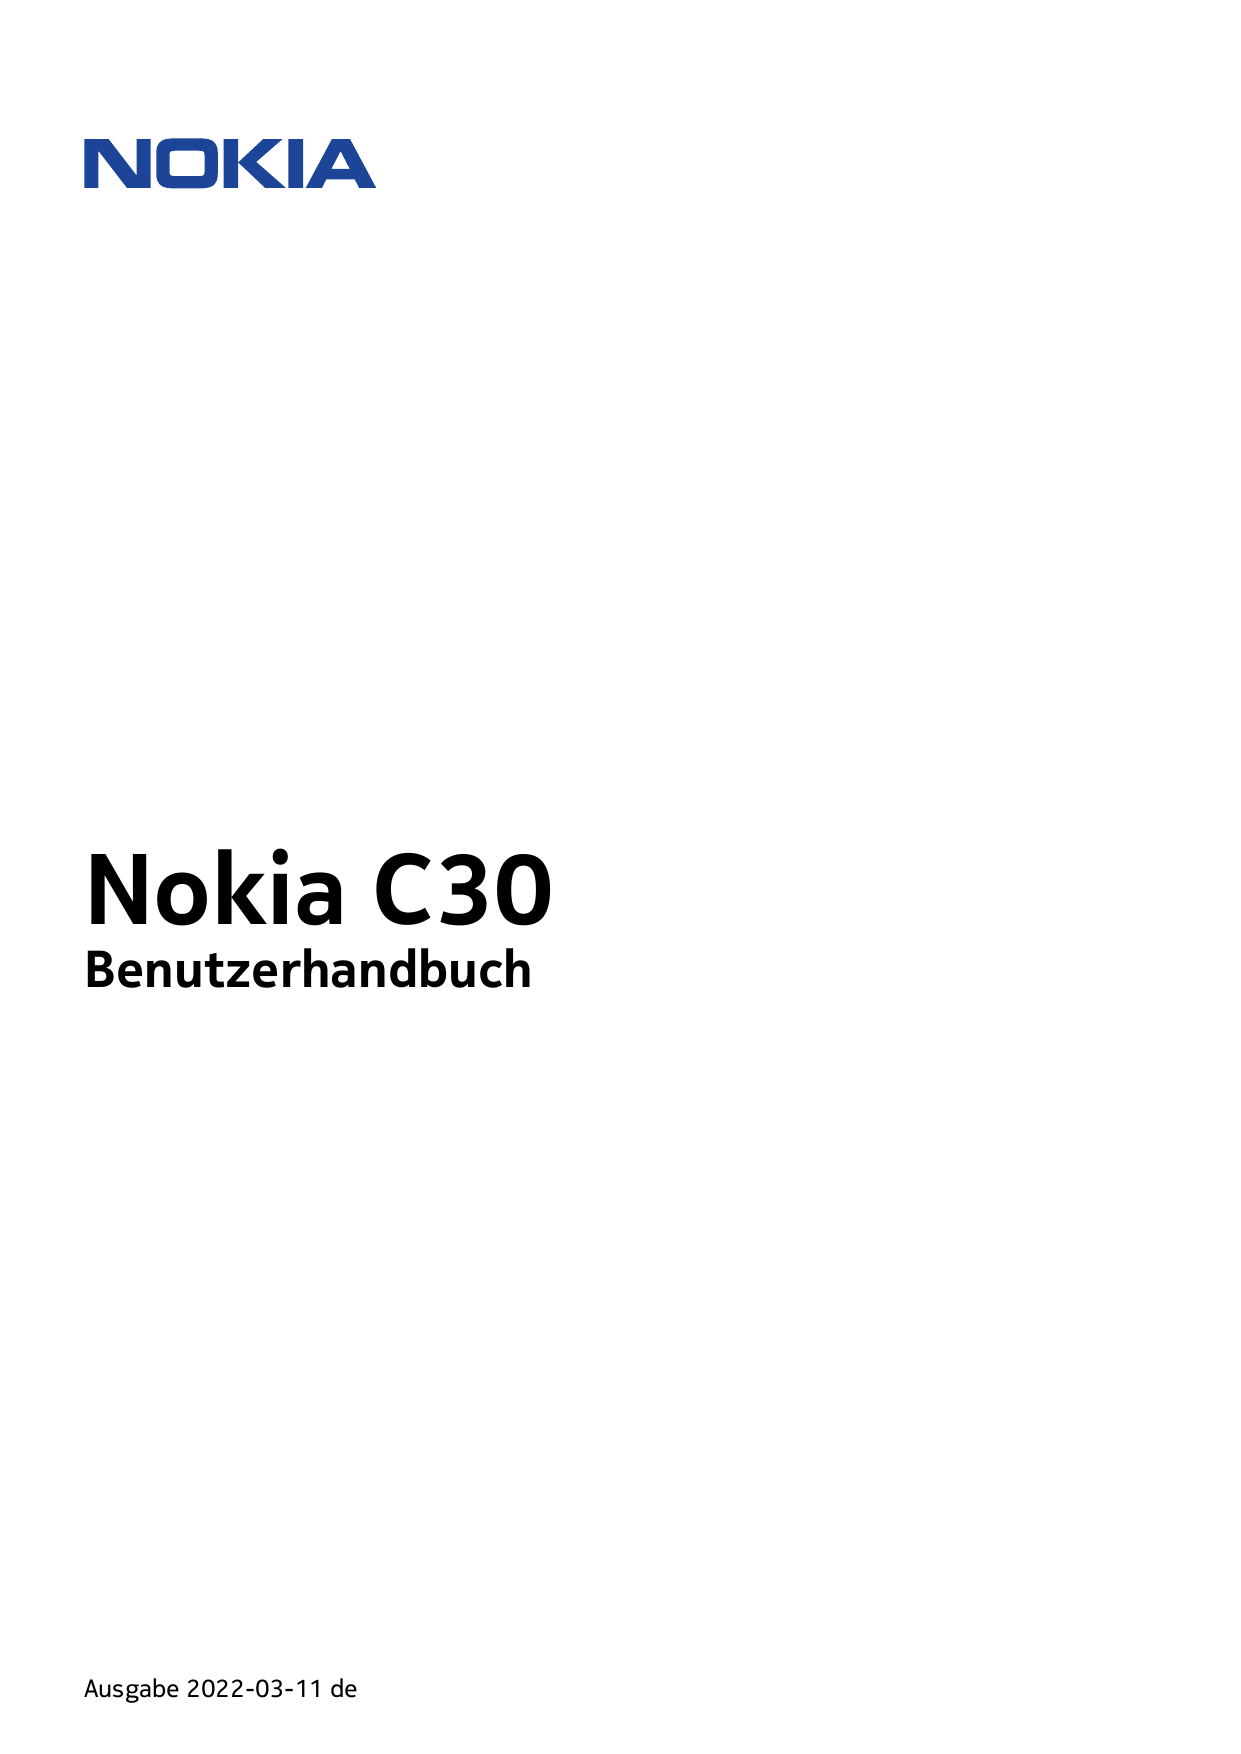 Nokia C30BenutzerhandbuchAusgabe 2022-03-11 de